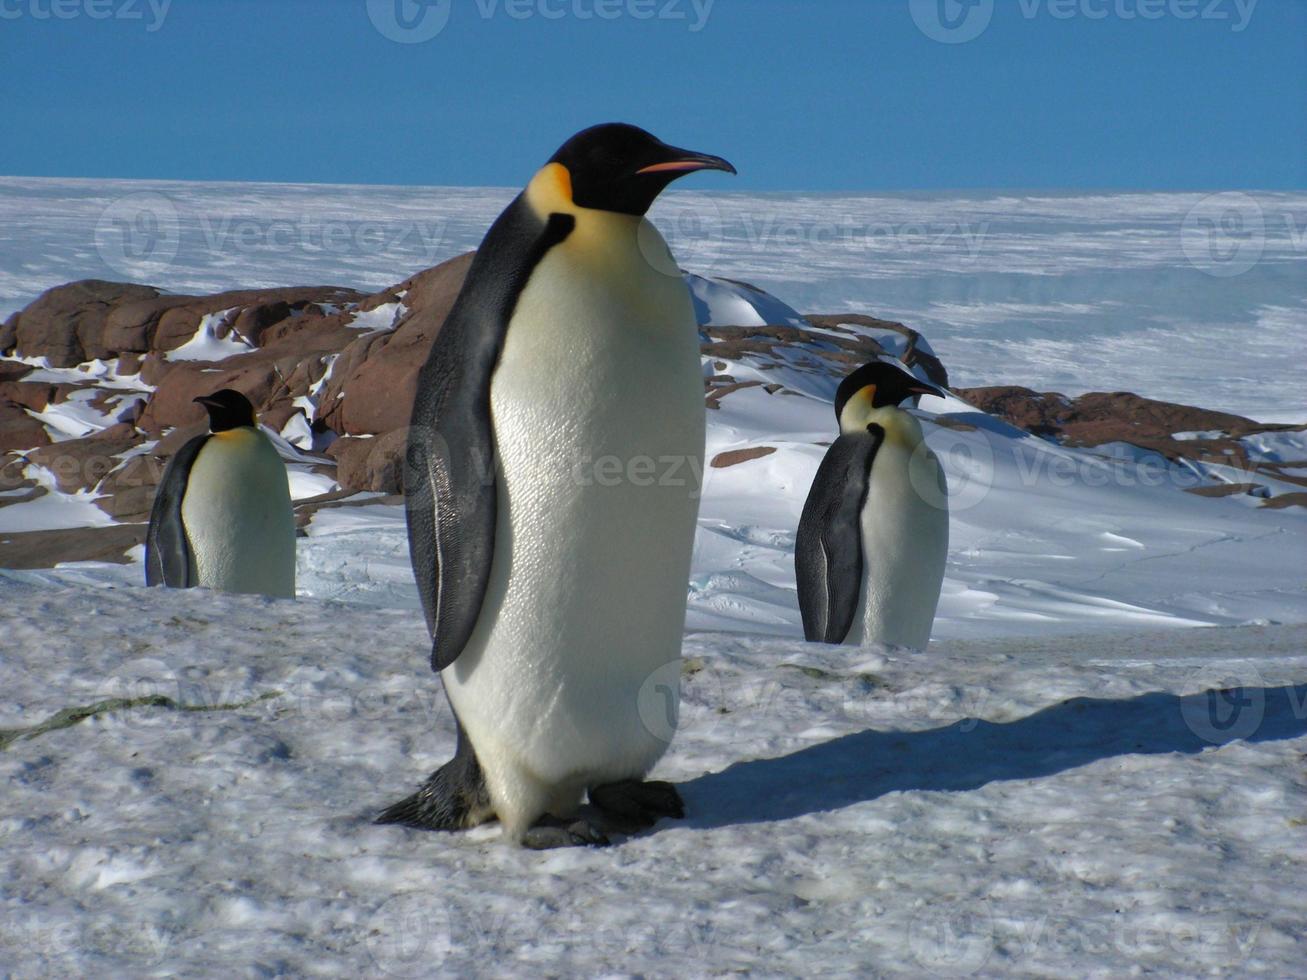 pinguini imperatori nel ghiaccio dell'Antartide foto